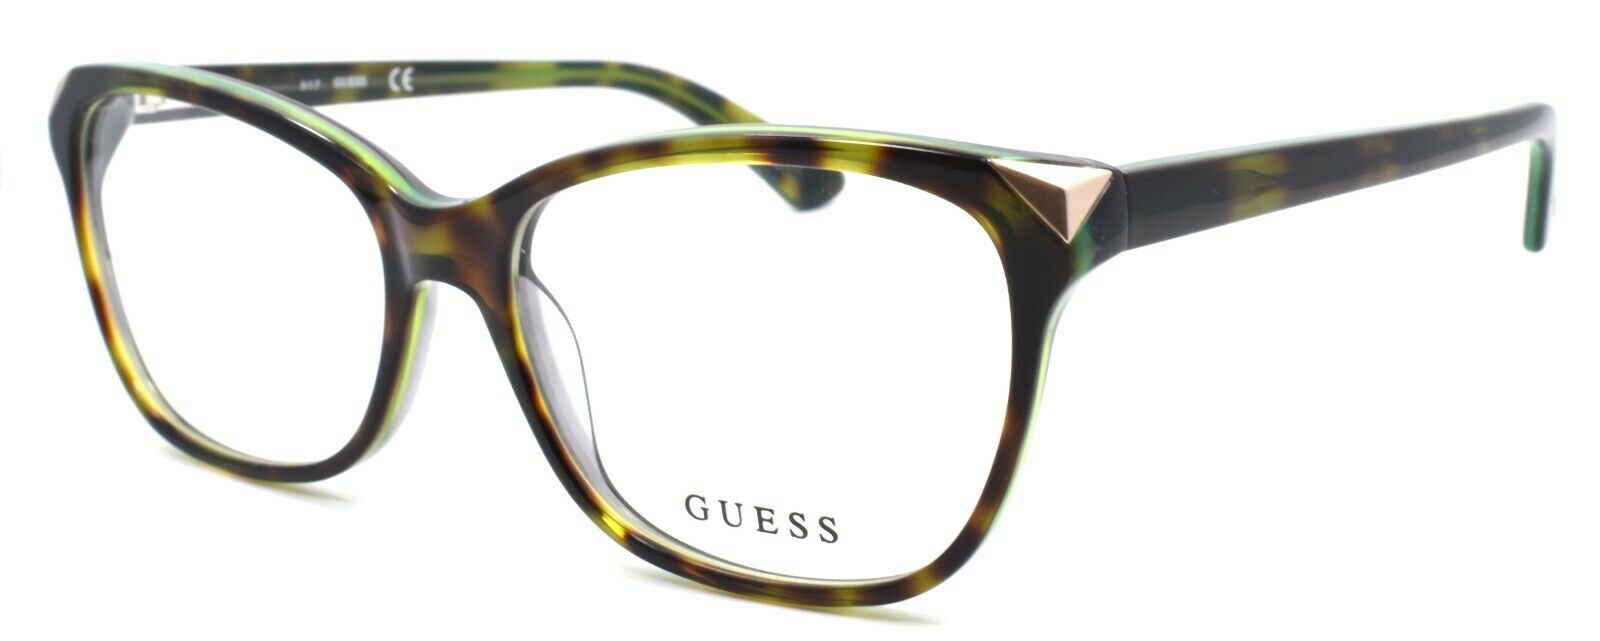 1-GUESS GU2494 056 Women's Eyeglasses Frames 53-15-135 Havana / Green-664689696628-IKSpecs